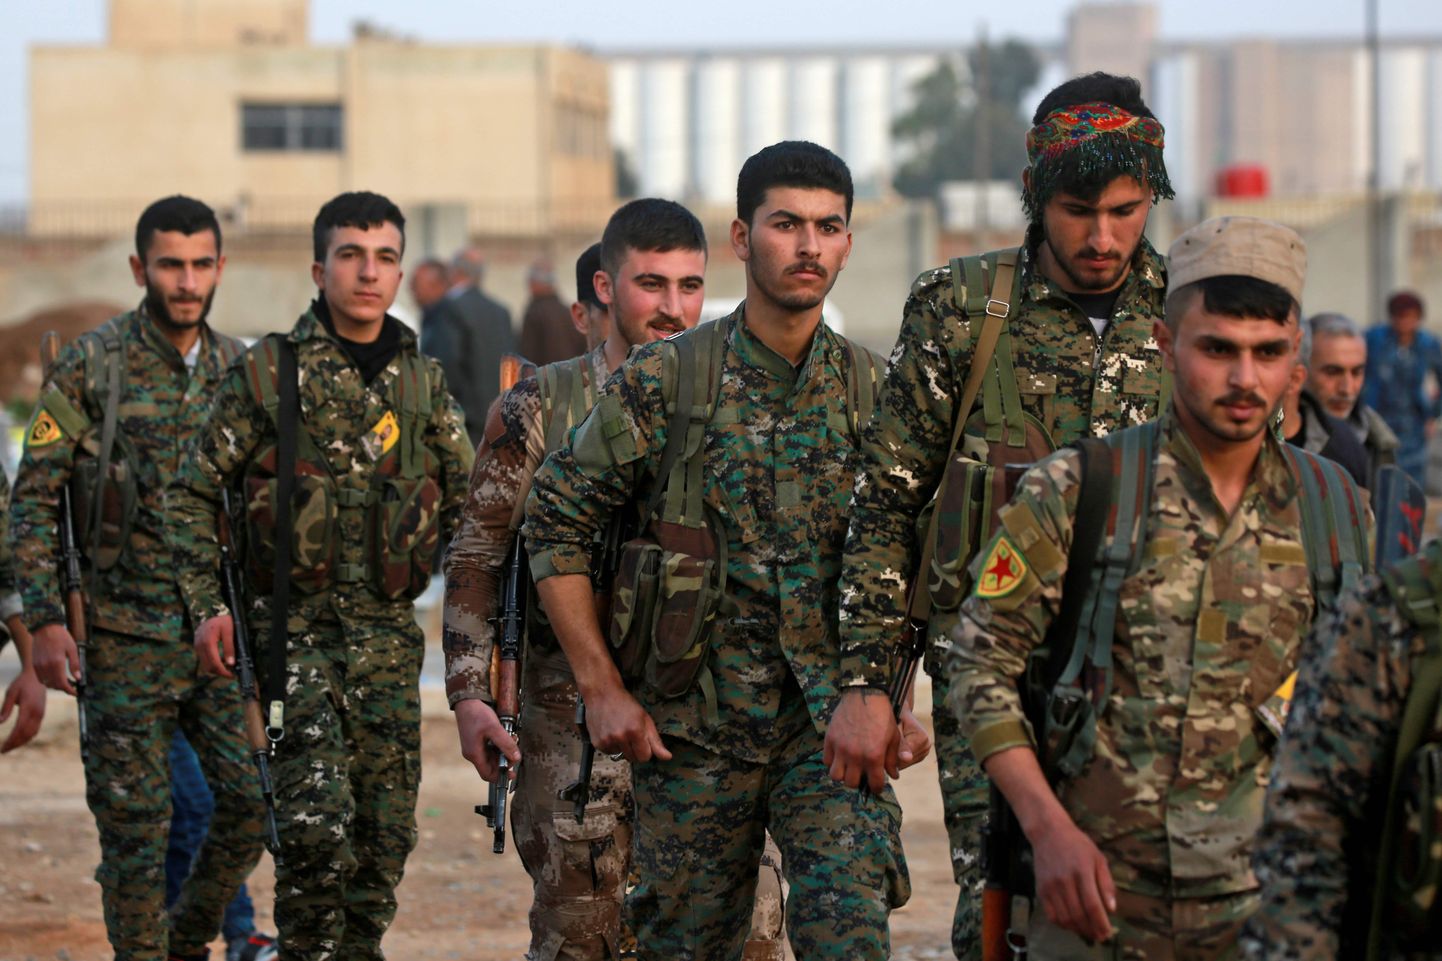 Süüria kurdi rahvakaitseüksuste (YPG) liikmed osalemas Süüria Demokraatlike Jõudude (SDF) liikmete matusel, kes hukkusid 3. märtsil äärmusrühmituse Islamiriik (IS) rünnakus.